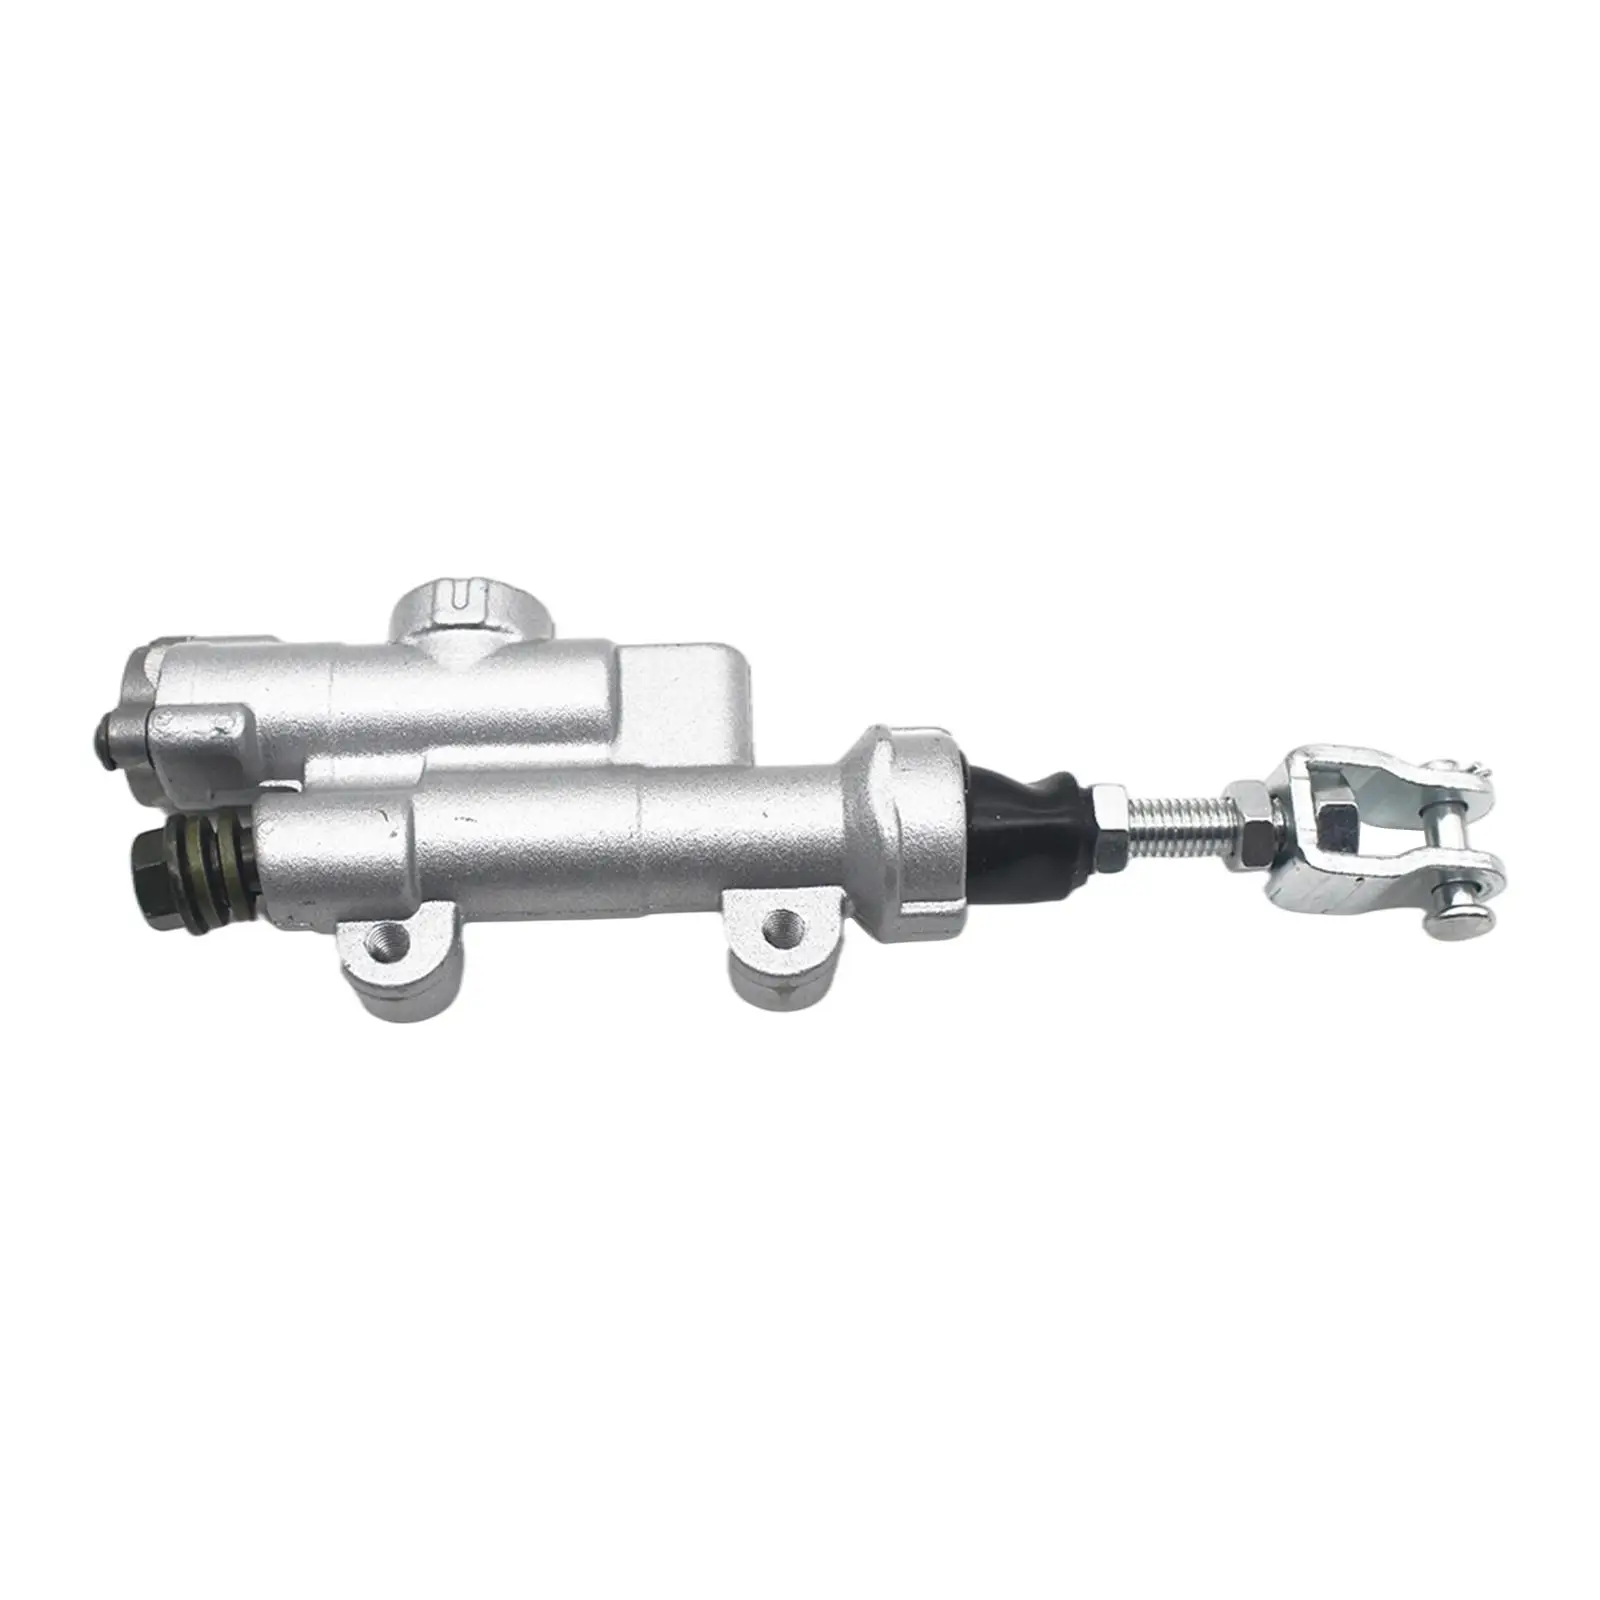 Rear Brake Master Cylinder Pump Hydraulic Refit 43500-Mey-006 for CR250R